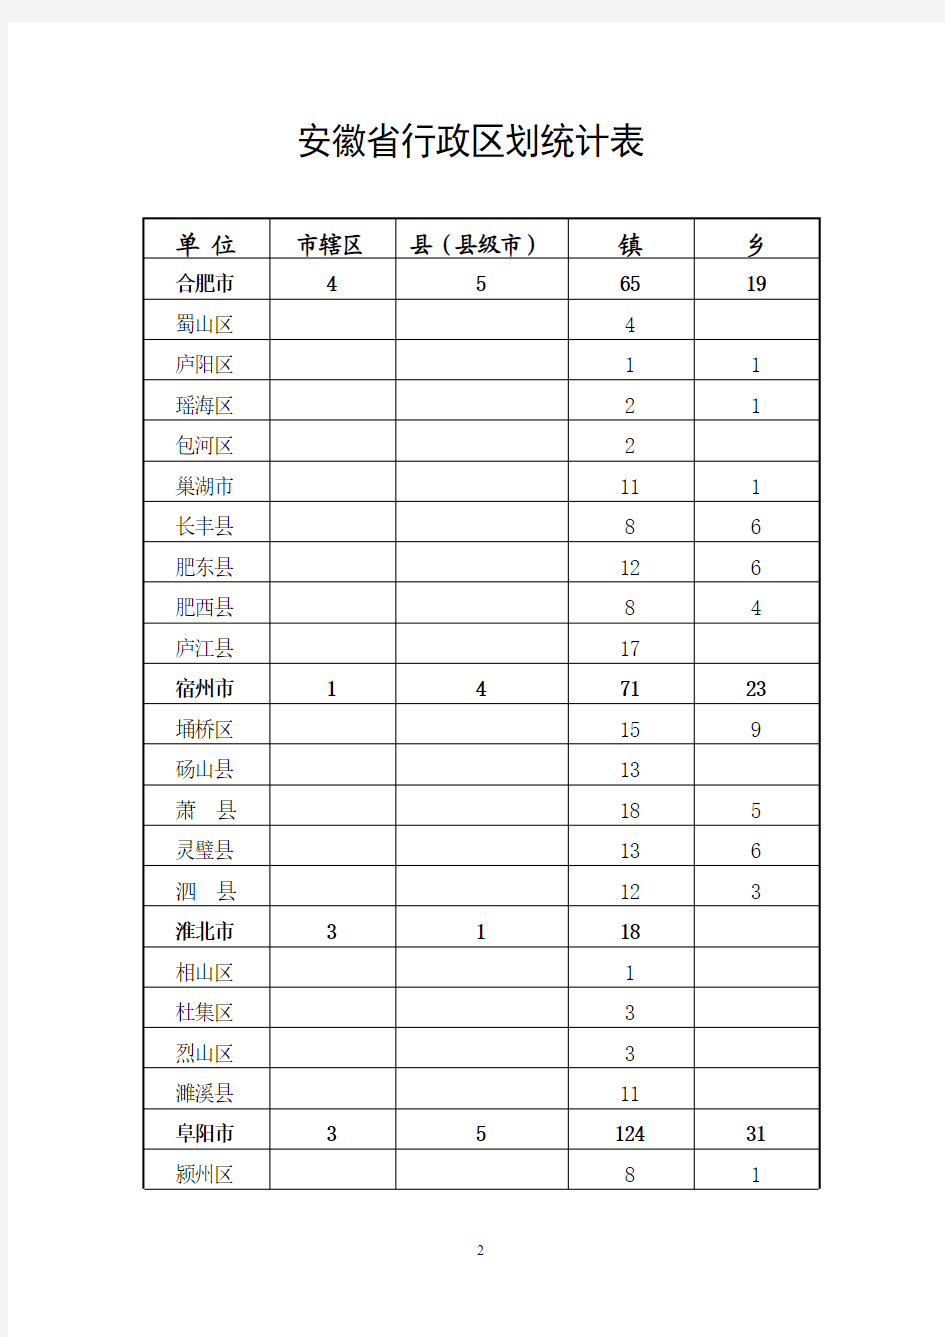 安徽省2016年行政区划简册(对外发布)